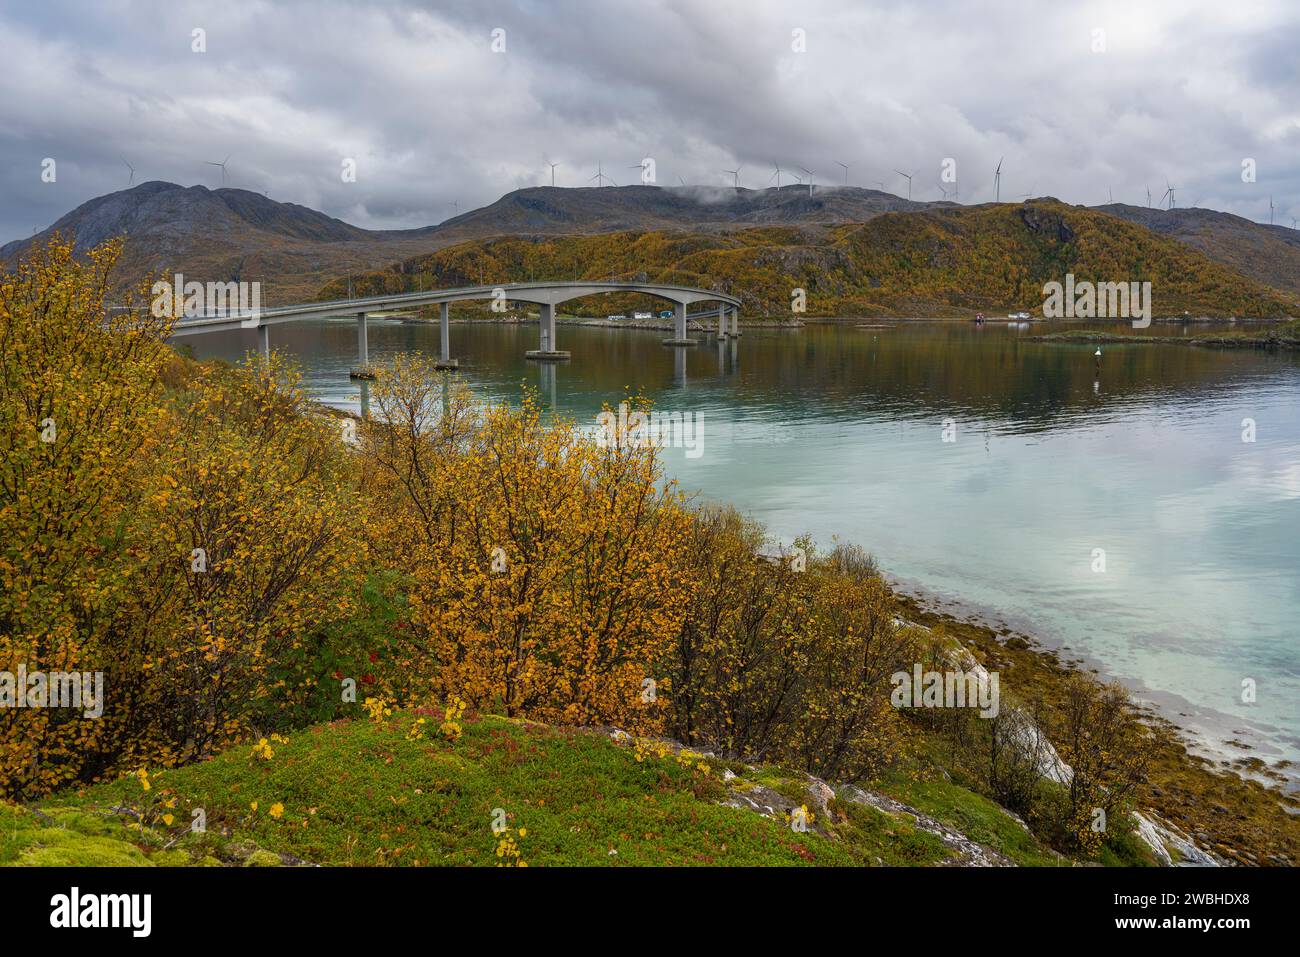 Die Brücke von Sommarøy, die majestätisch kurvt und überquert den Atlantik an der Küste von Troms, Norwegen. Herbstliche farbige Pflanzen am Ufer des Ozeans Stockfoto